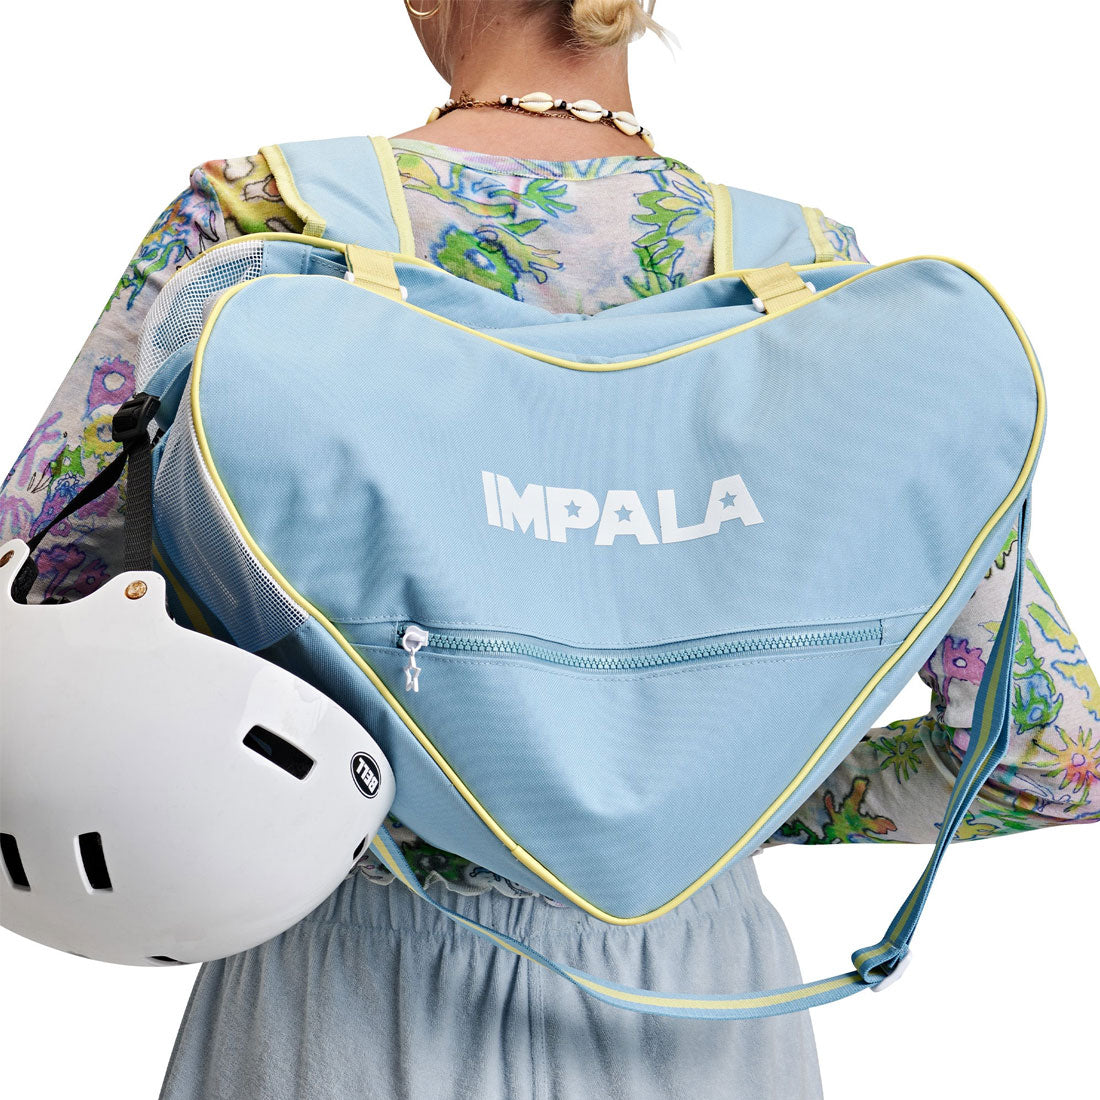 Impala Skate Bag - Sky Blue Bags and Backpacks